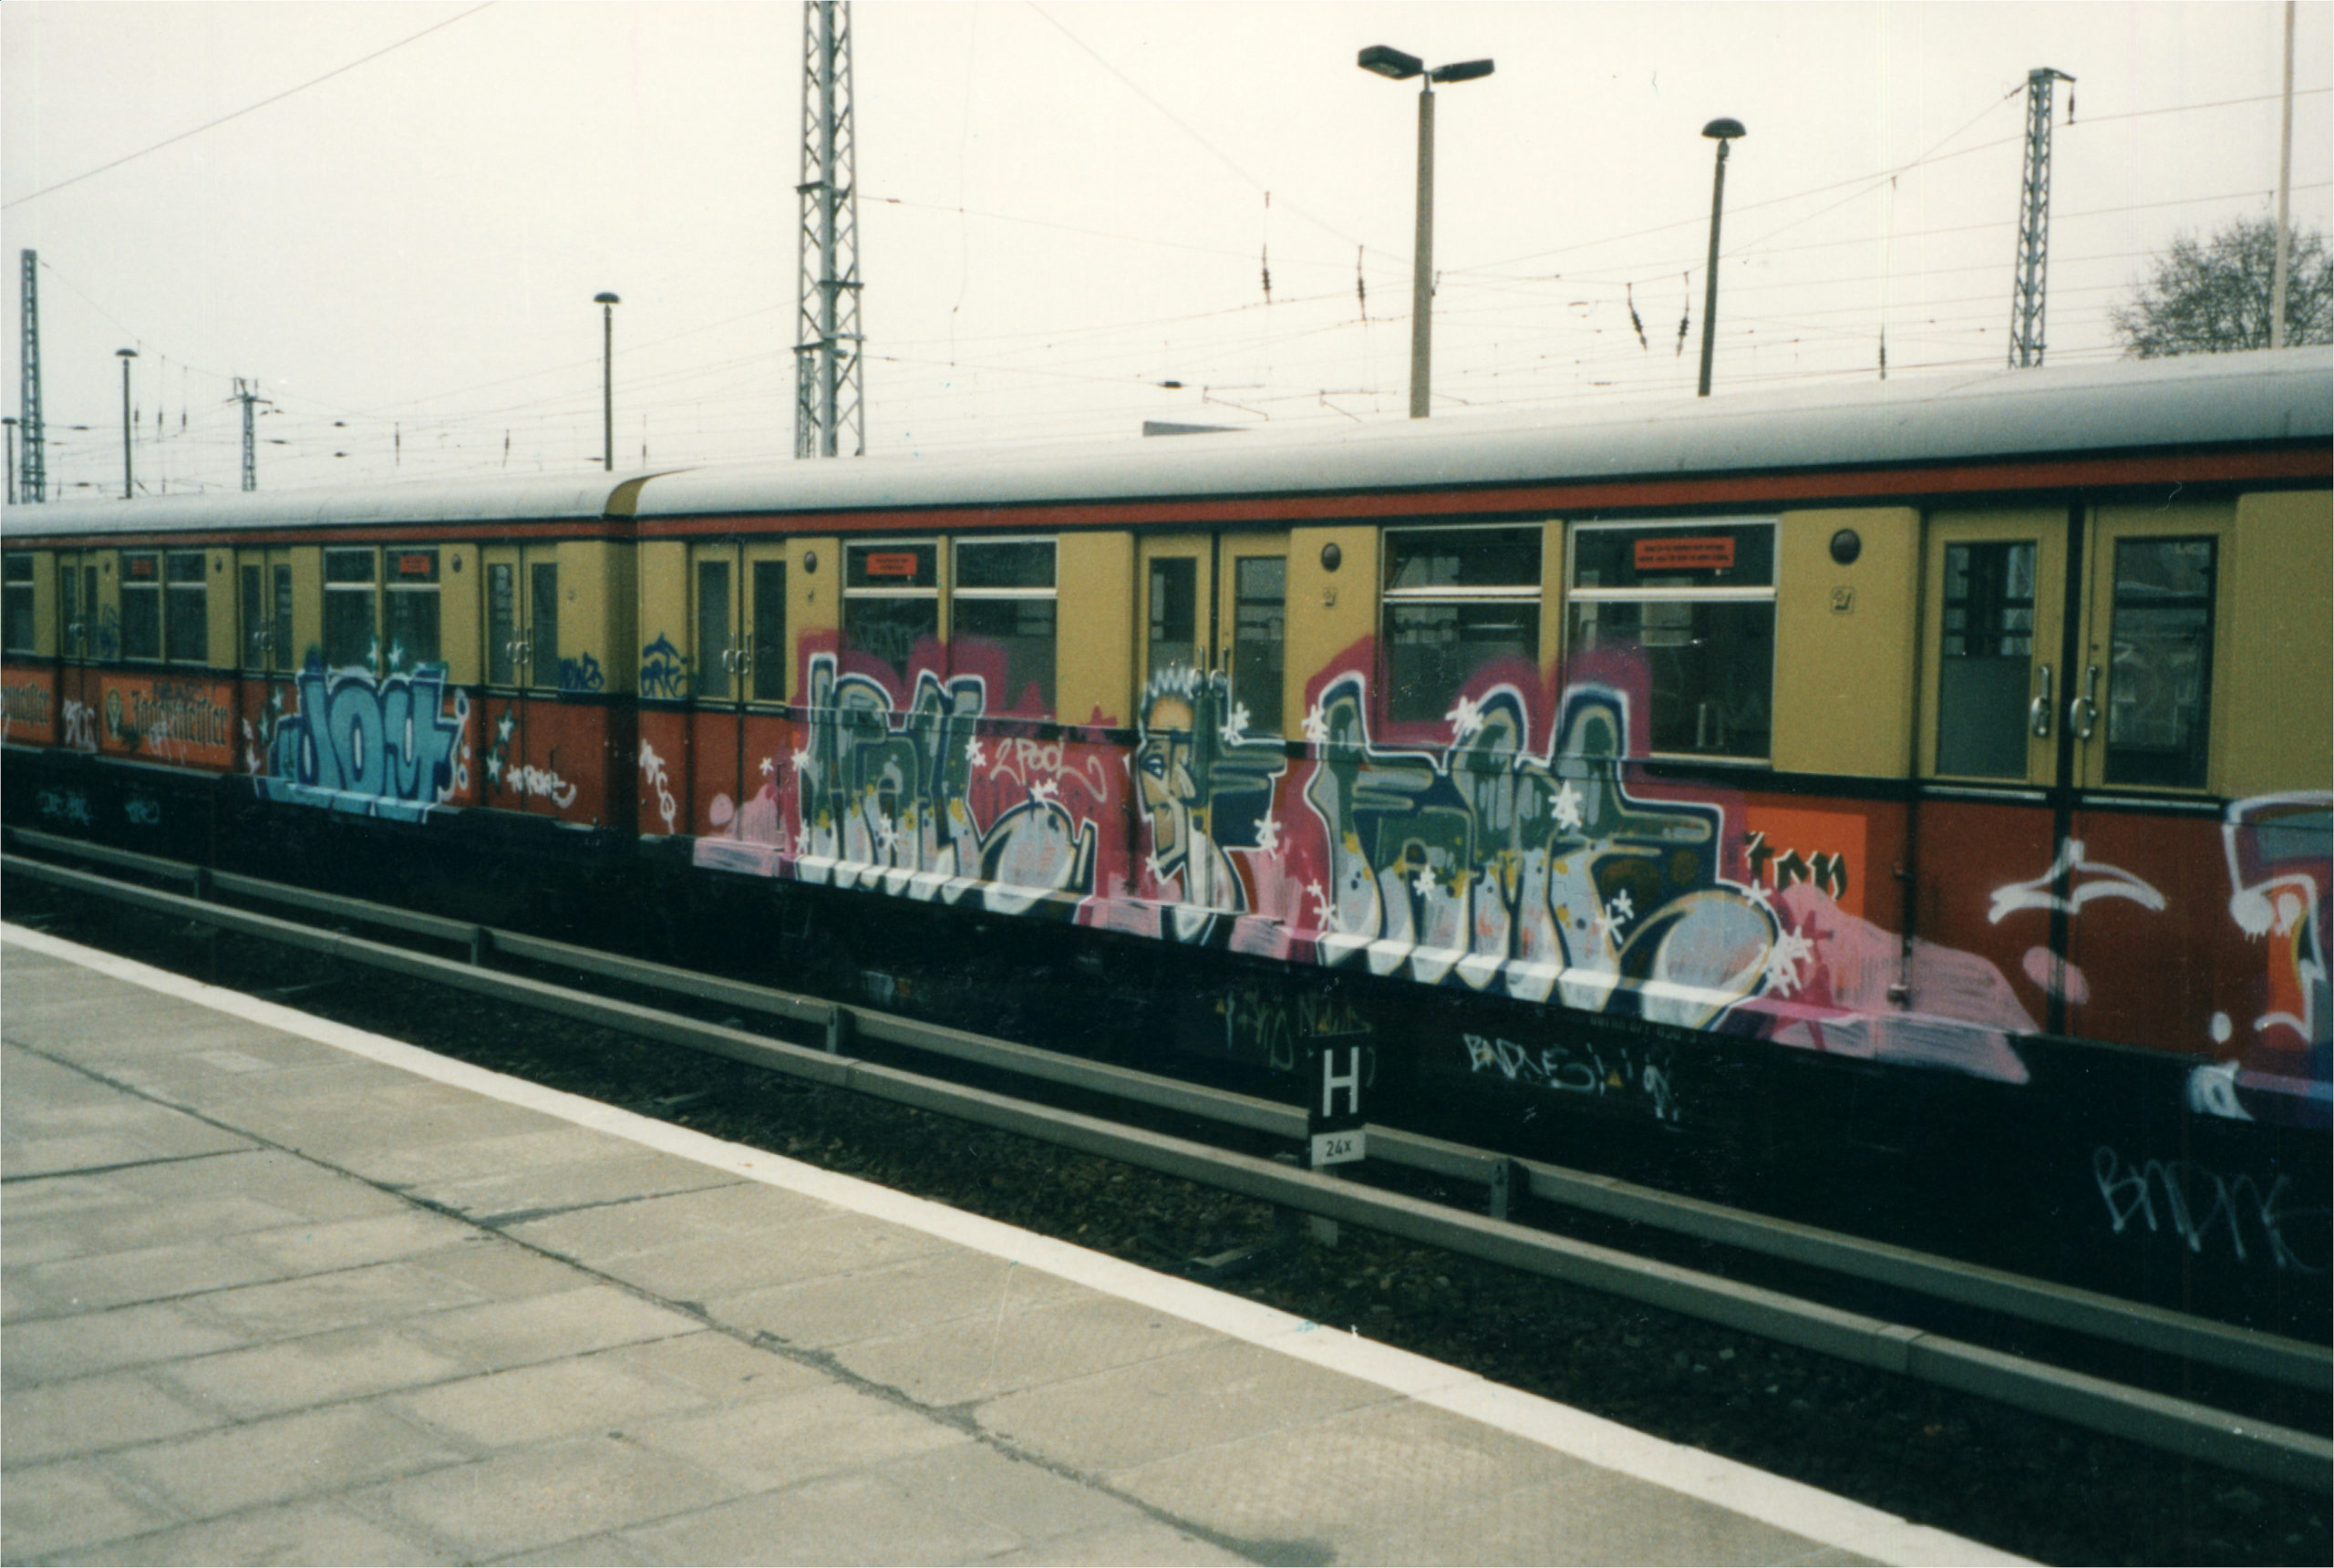 Eine ganze S-Bahn mit Wildstyles verziert. Foto aus "DECADES 1990-2000 Graffiti in Berlin"